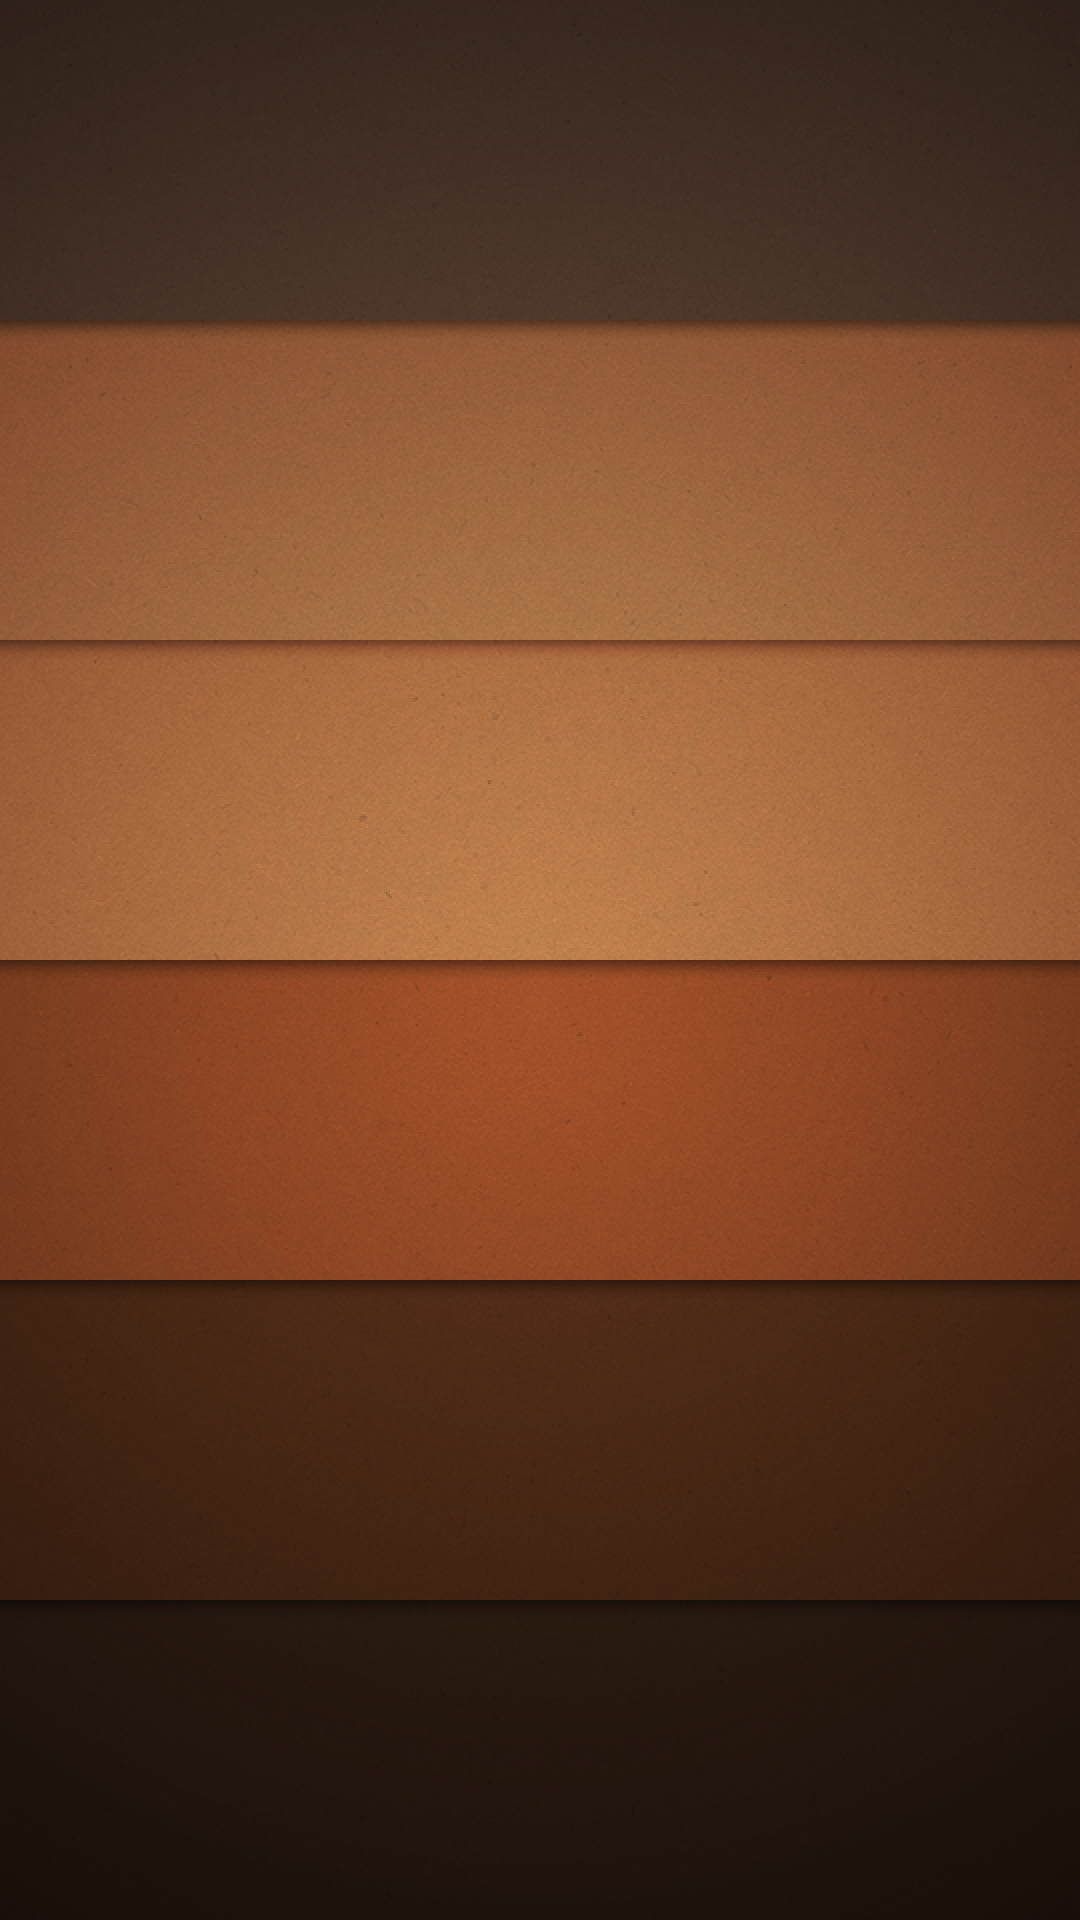 fond d'écran android guimauve 1080p,orange,marron,jaune,ligne,ciel